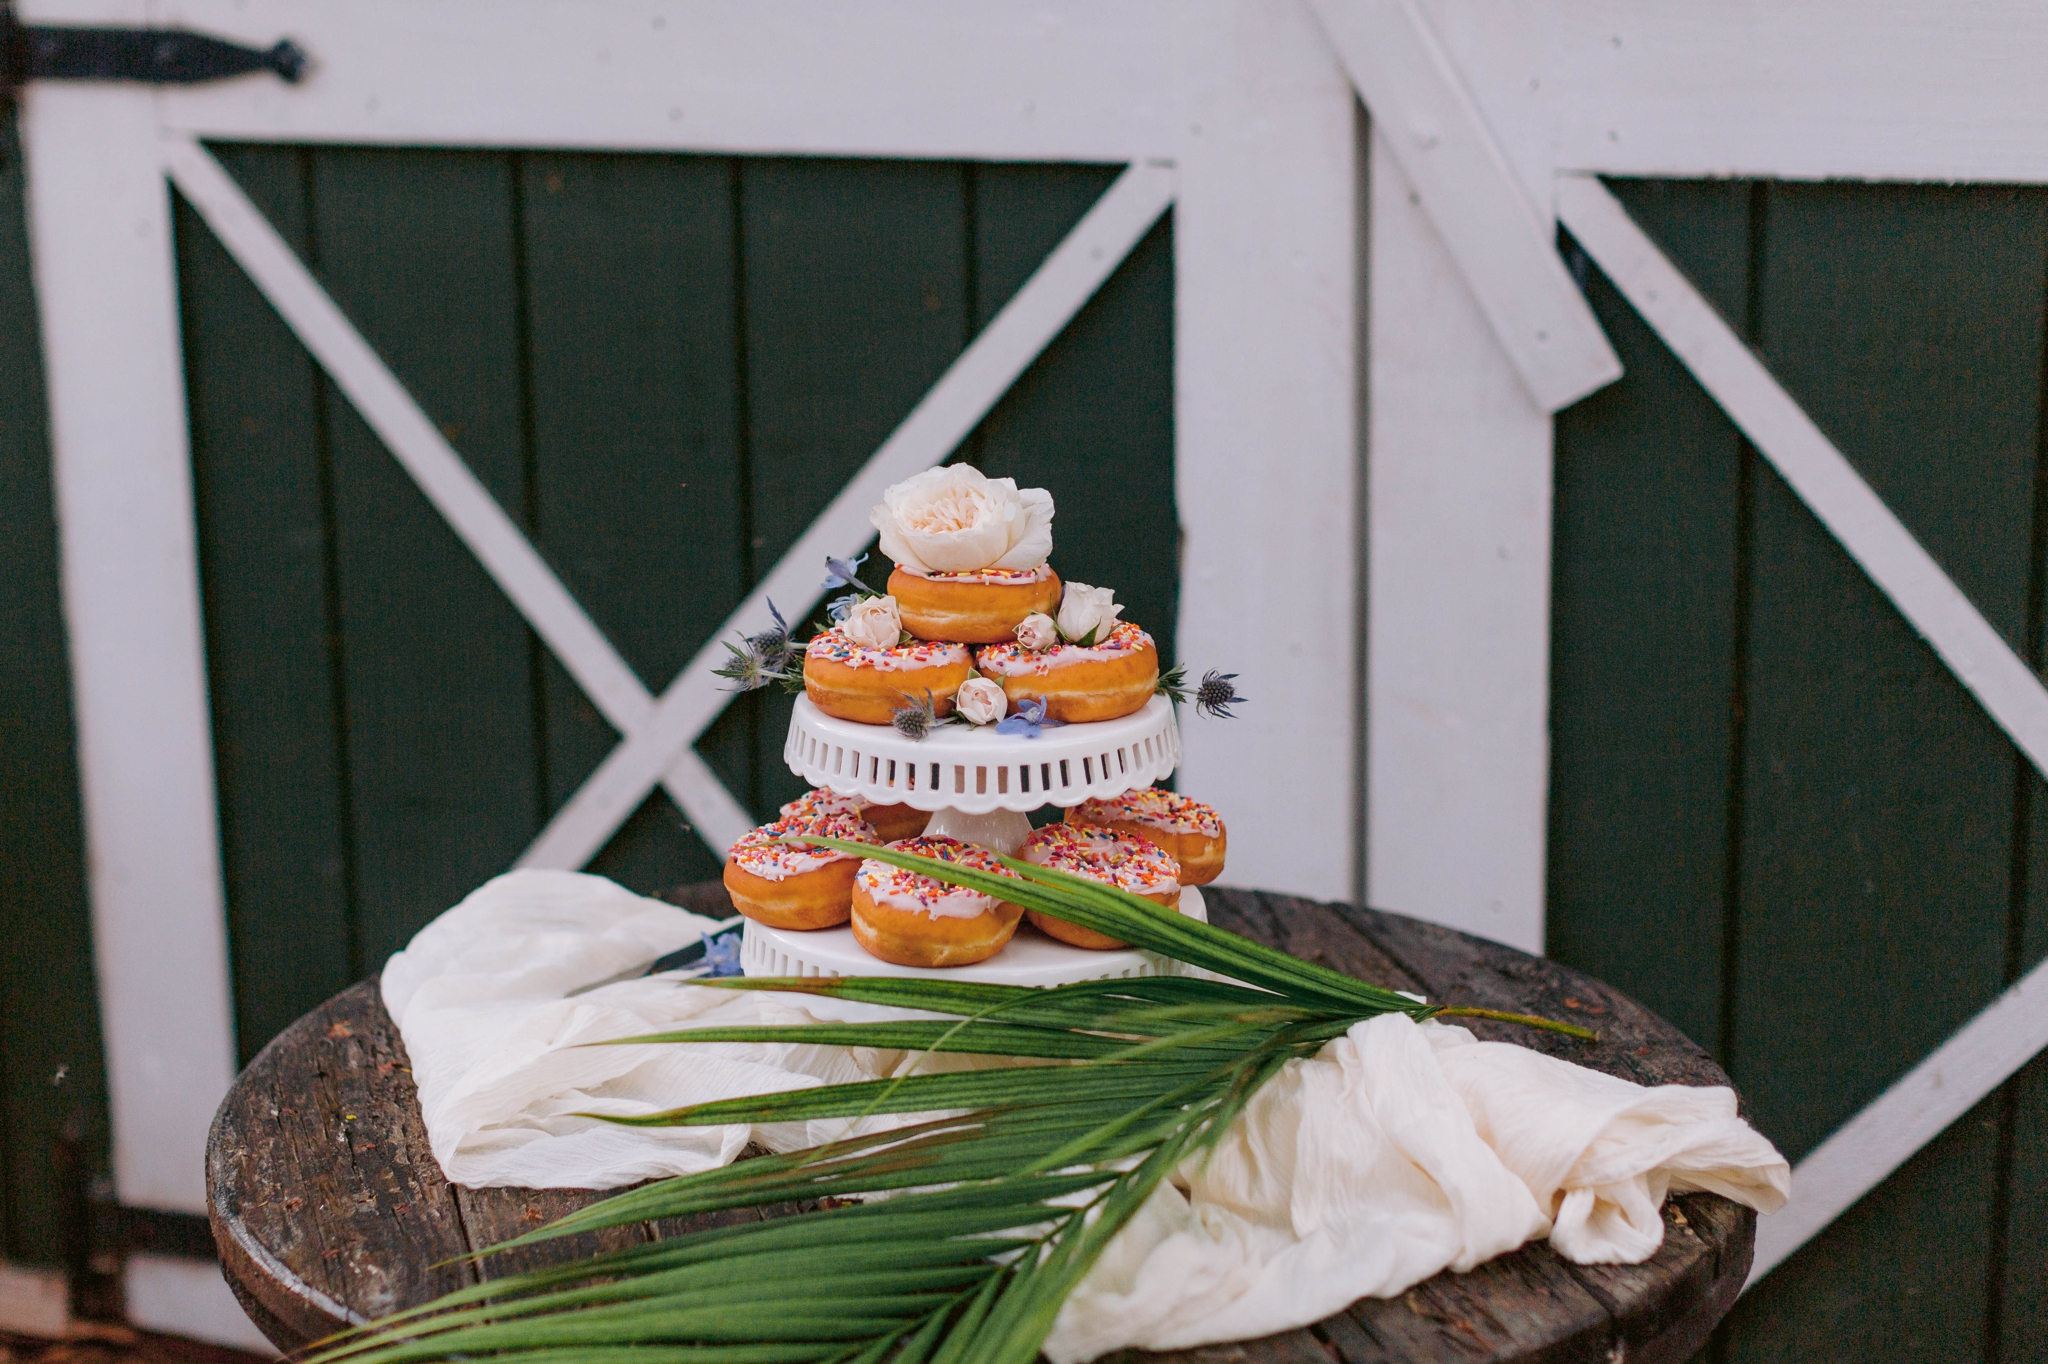 Donuts as the wedding cake - Ana + Elijah - Wedding at Loulu Palm in Haleiwa, HI - Oahu Hawaii Wedding Photographer - #hawaiiweddingphotographer #oahuweddings #hawaiiweddings